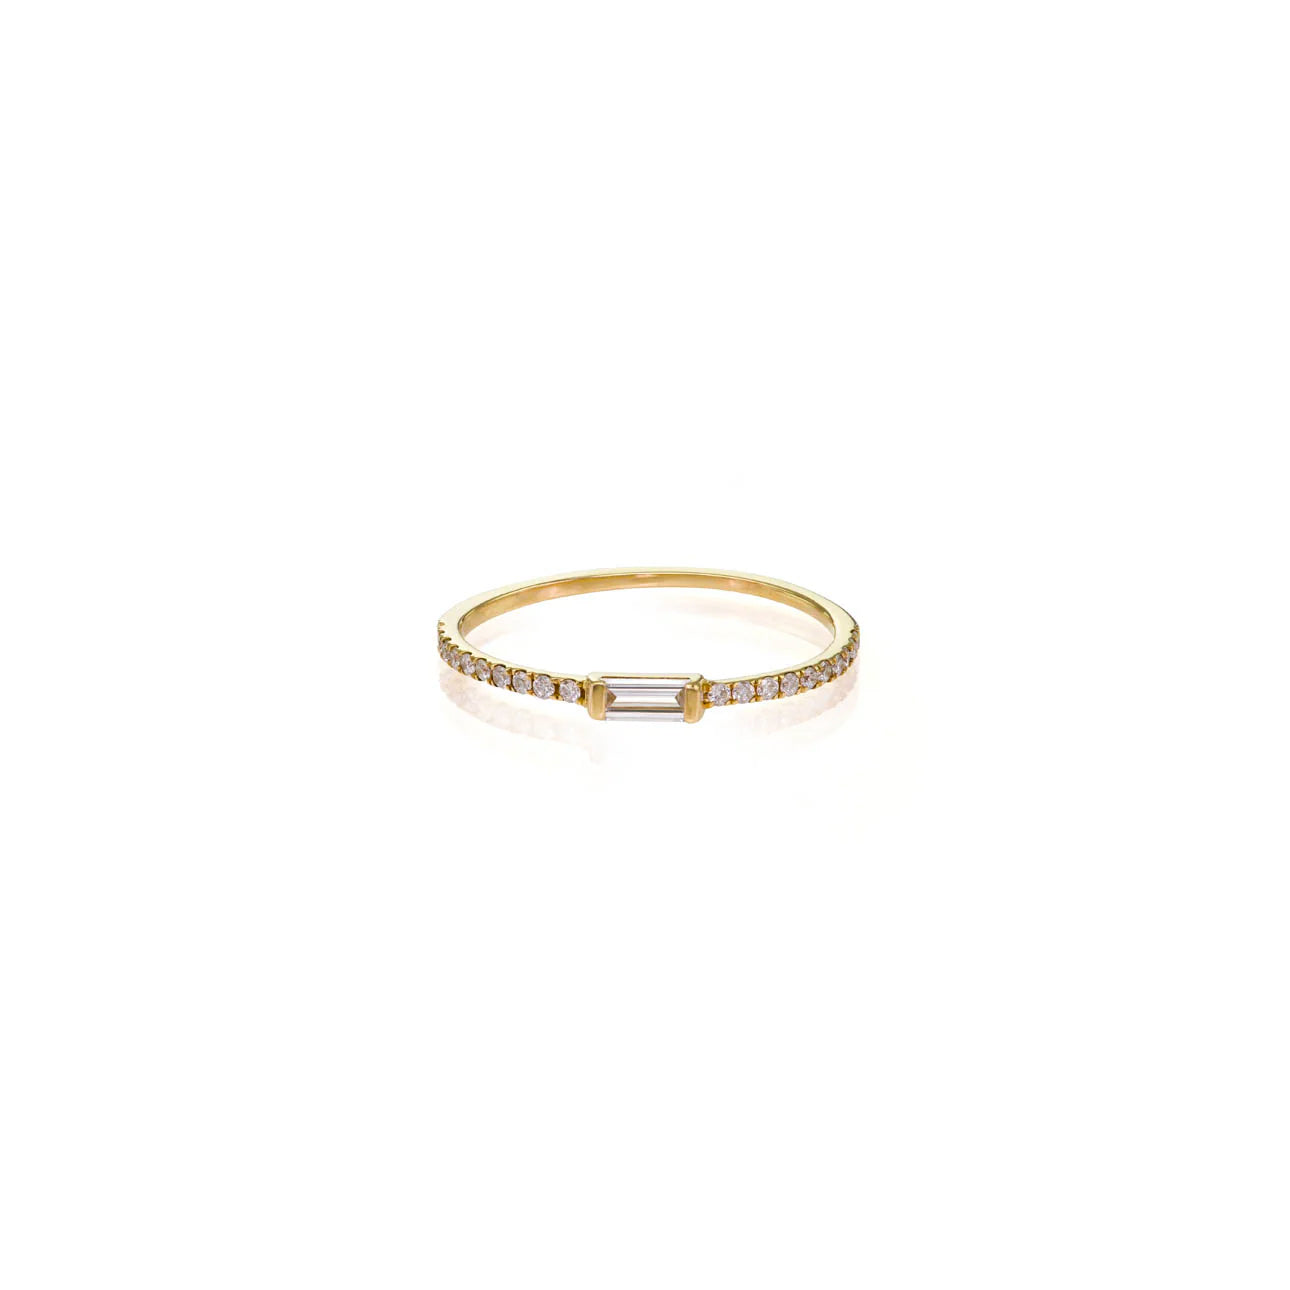 Delicate Baguette Diamond Engagement Ring - unique wedding jewelry by Phoenix Roze